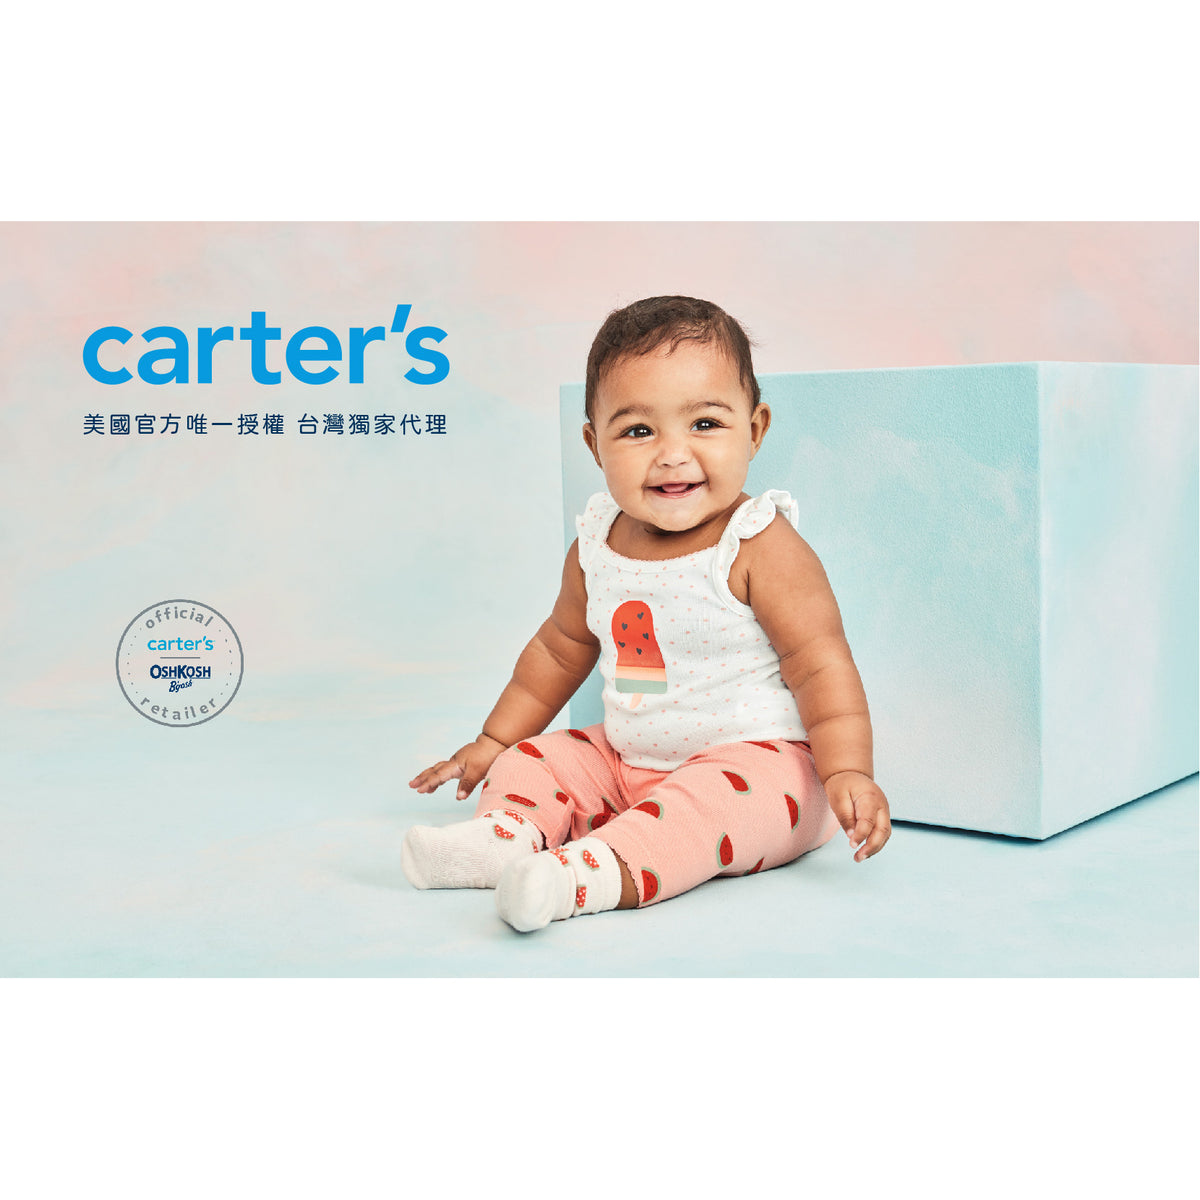 Carter's 粉嫩嫩寶寶連身裝(3M-9M)